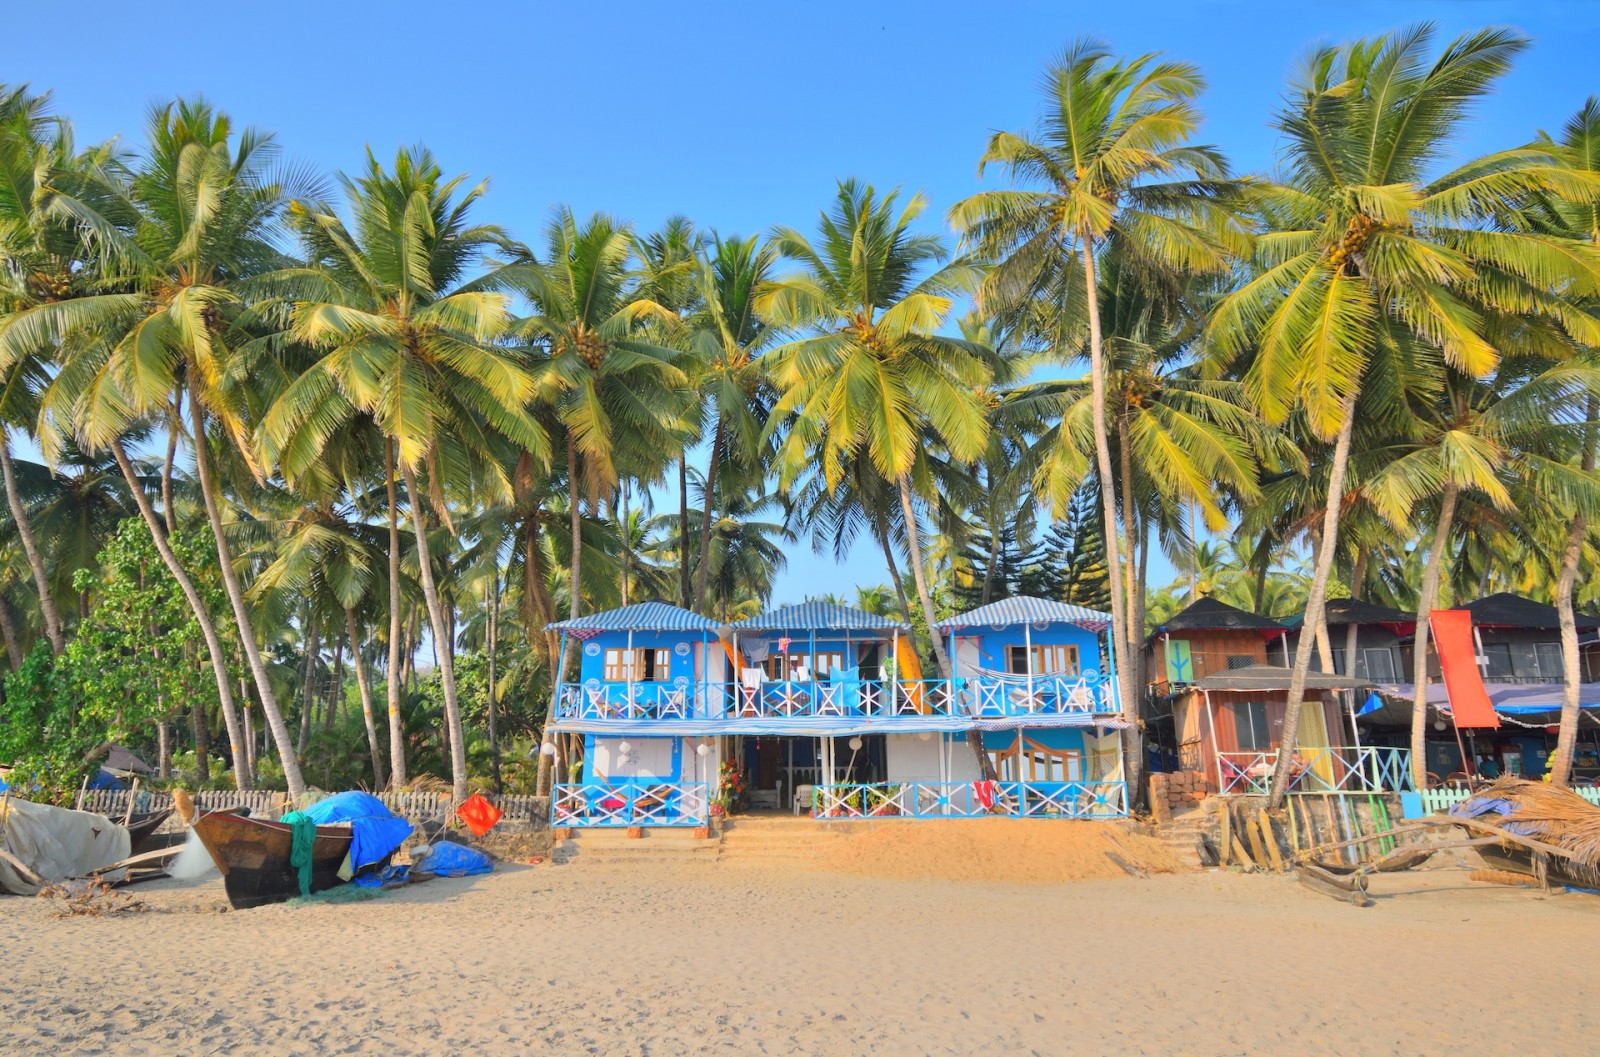 Capanne variopinte della spiaggia in spiaggia di Palolem, Goa